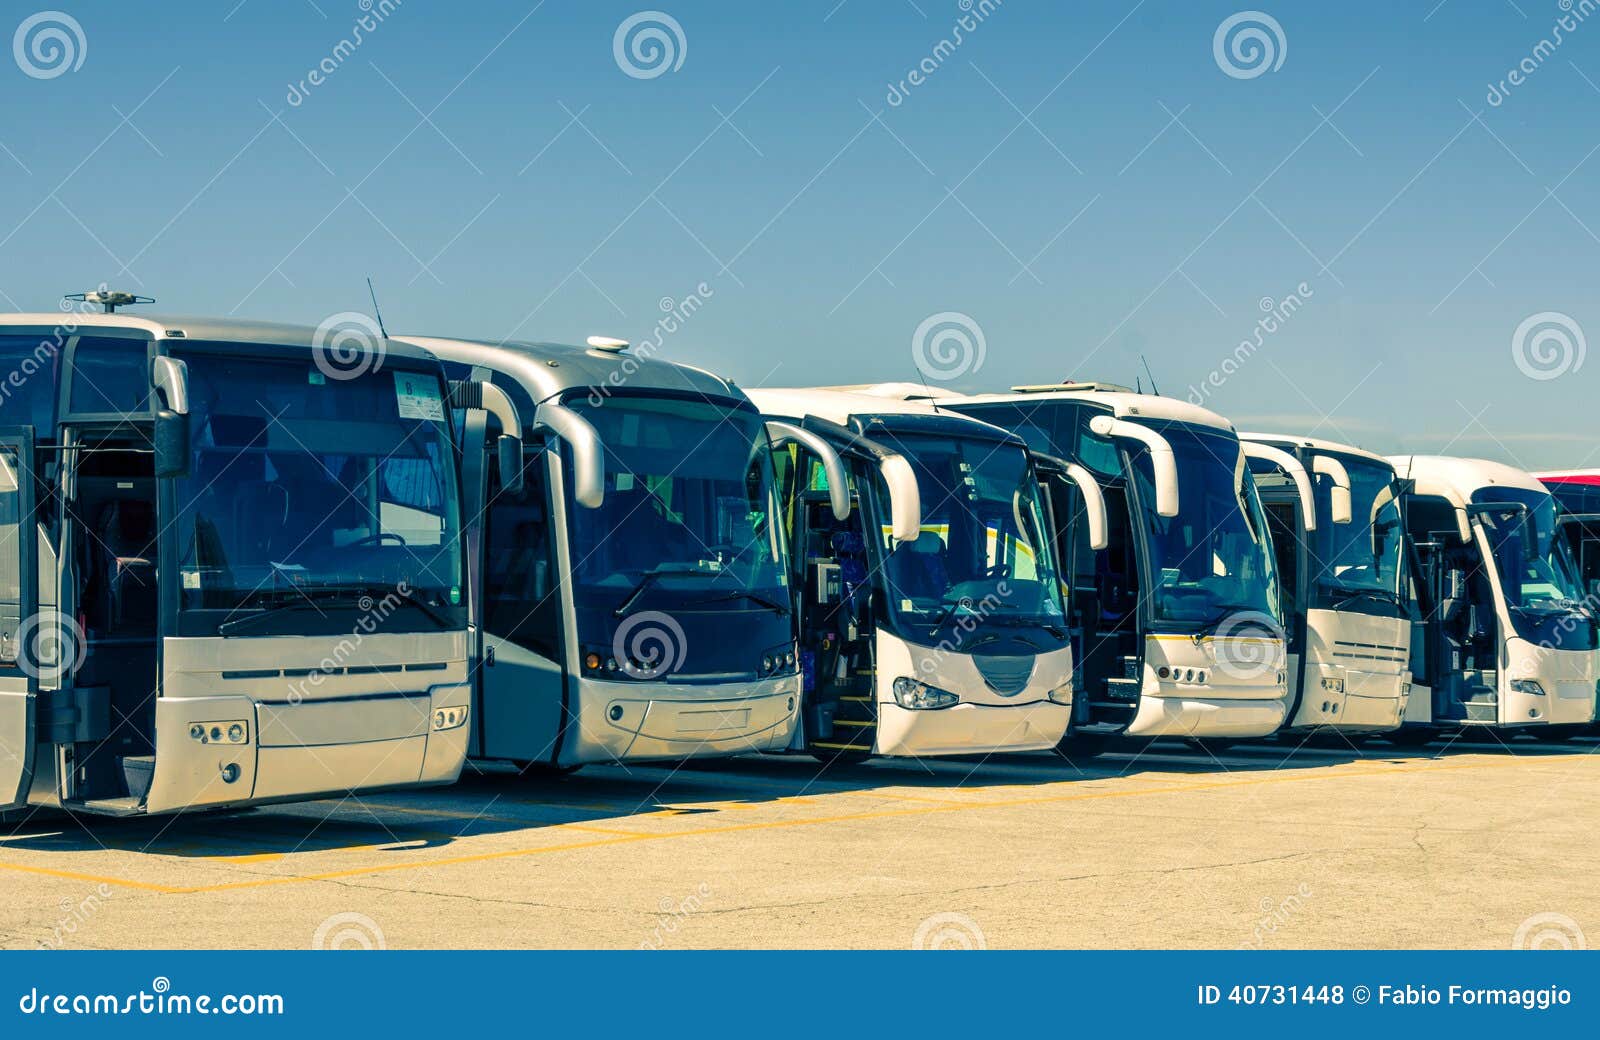 touristic buses